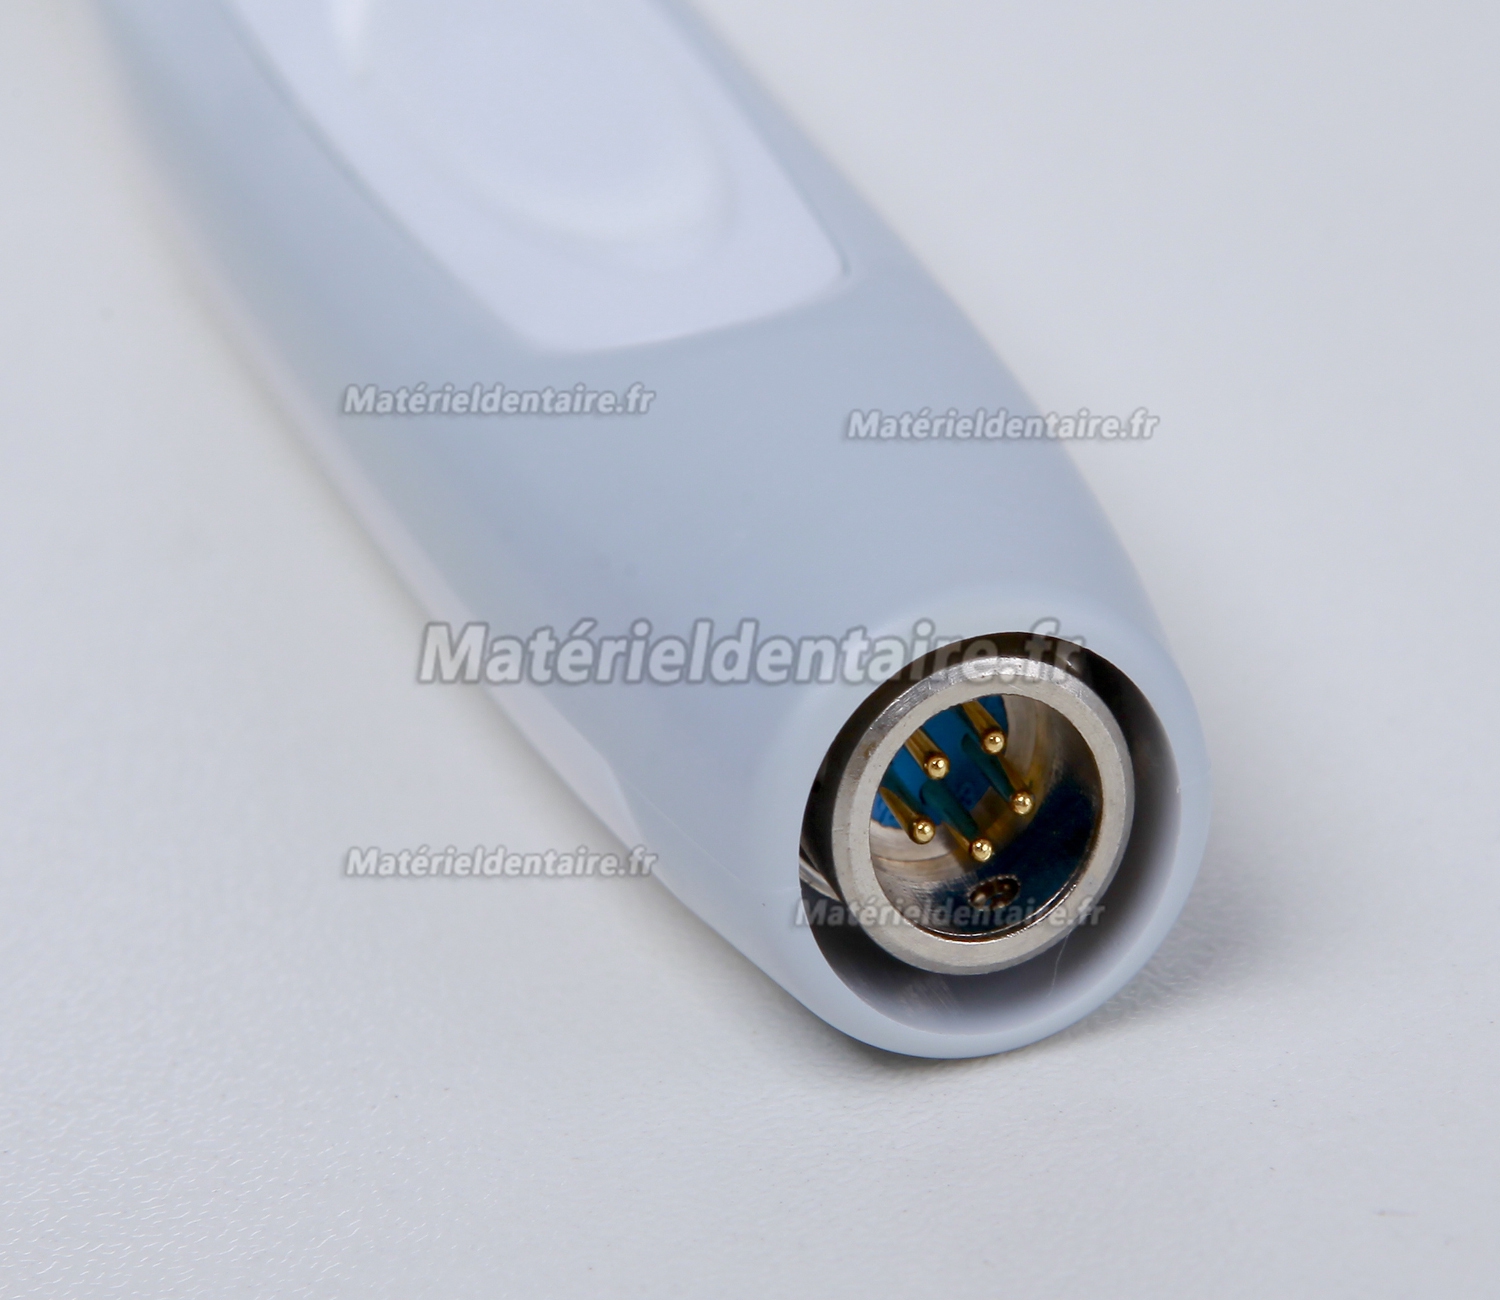 Magenta® MD740 Caméra intra orale USB connexion Plus de détails 2